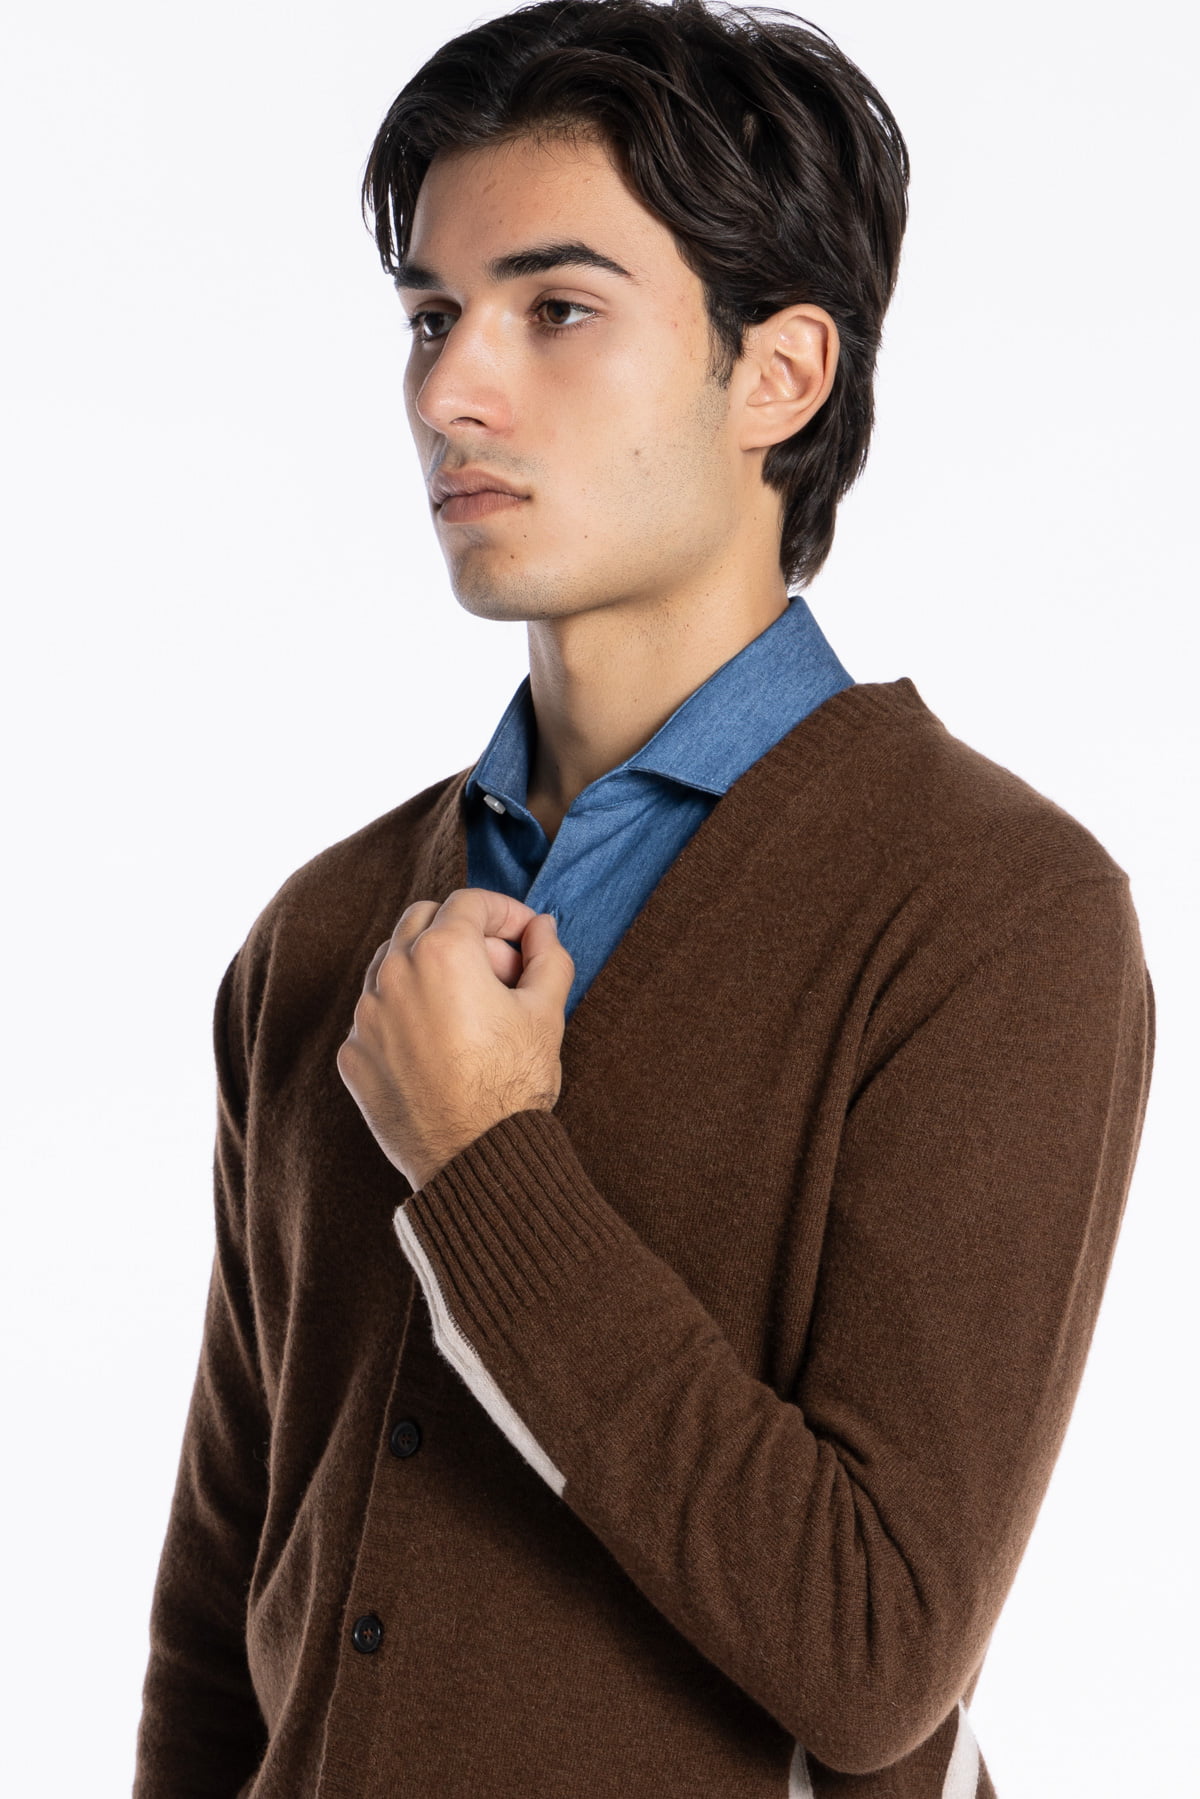 Cardigan da uomo in in lana mista marrone con fasce bianche laterali e dietro i polsi 6 bottoni